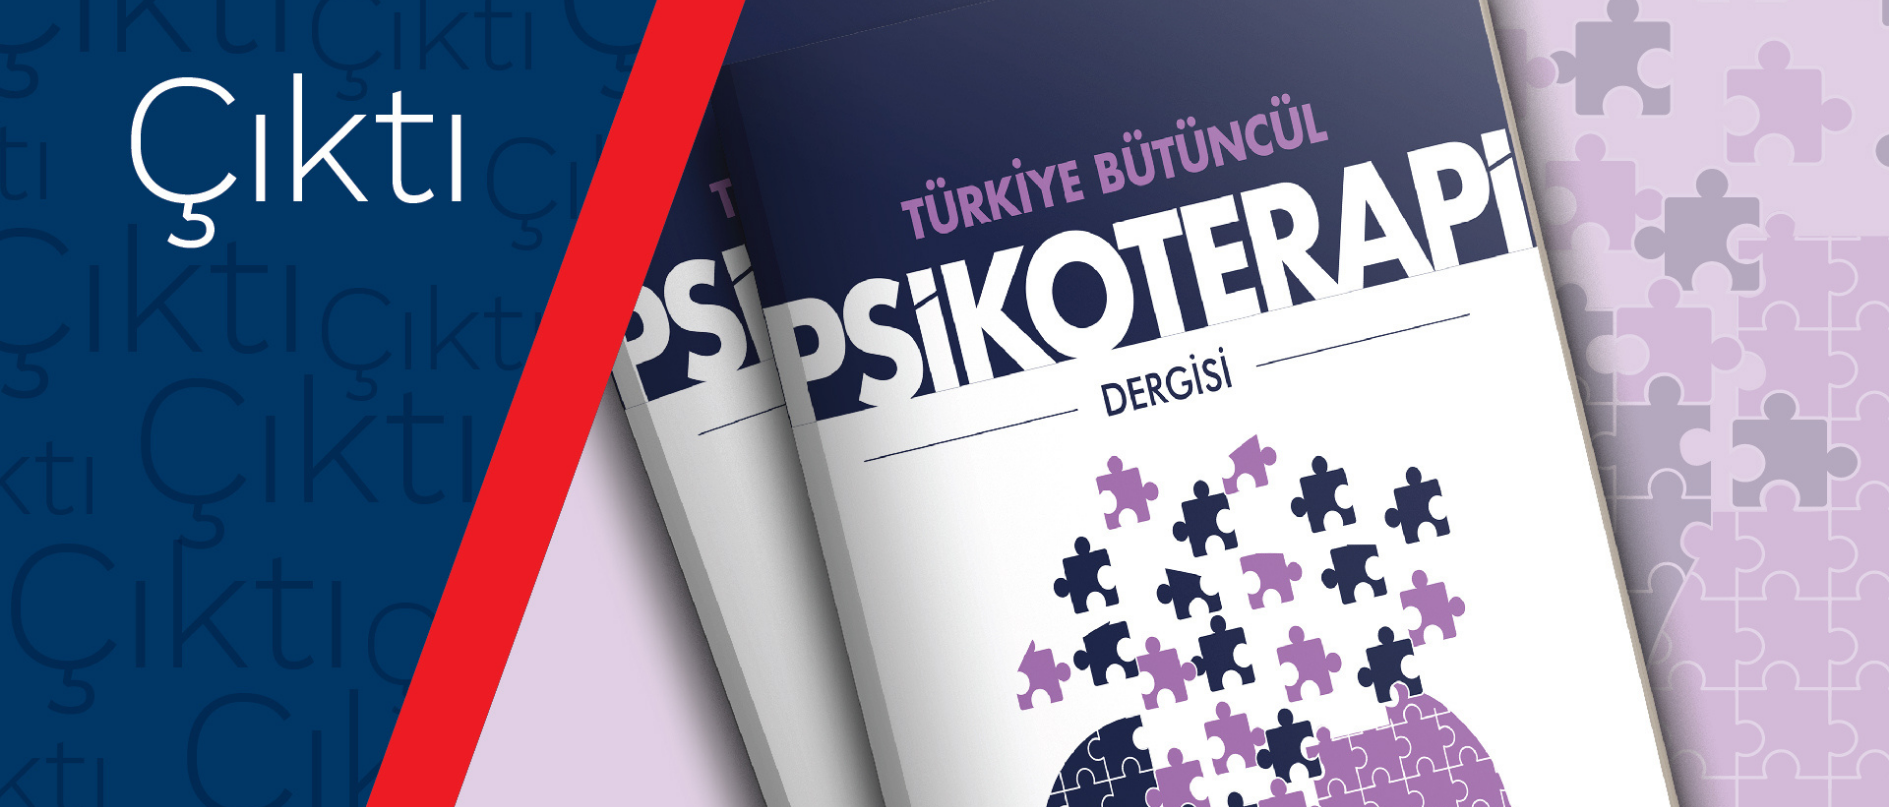 Türkiye Bütüncül Psikoterapi Dergisi